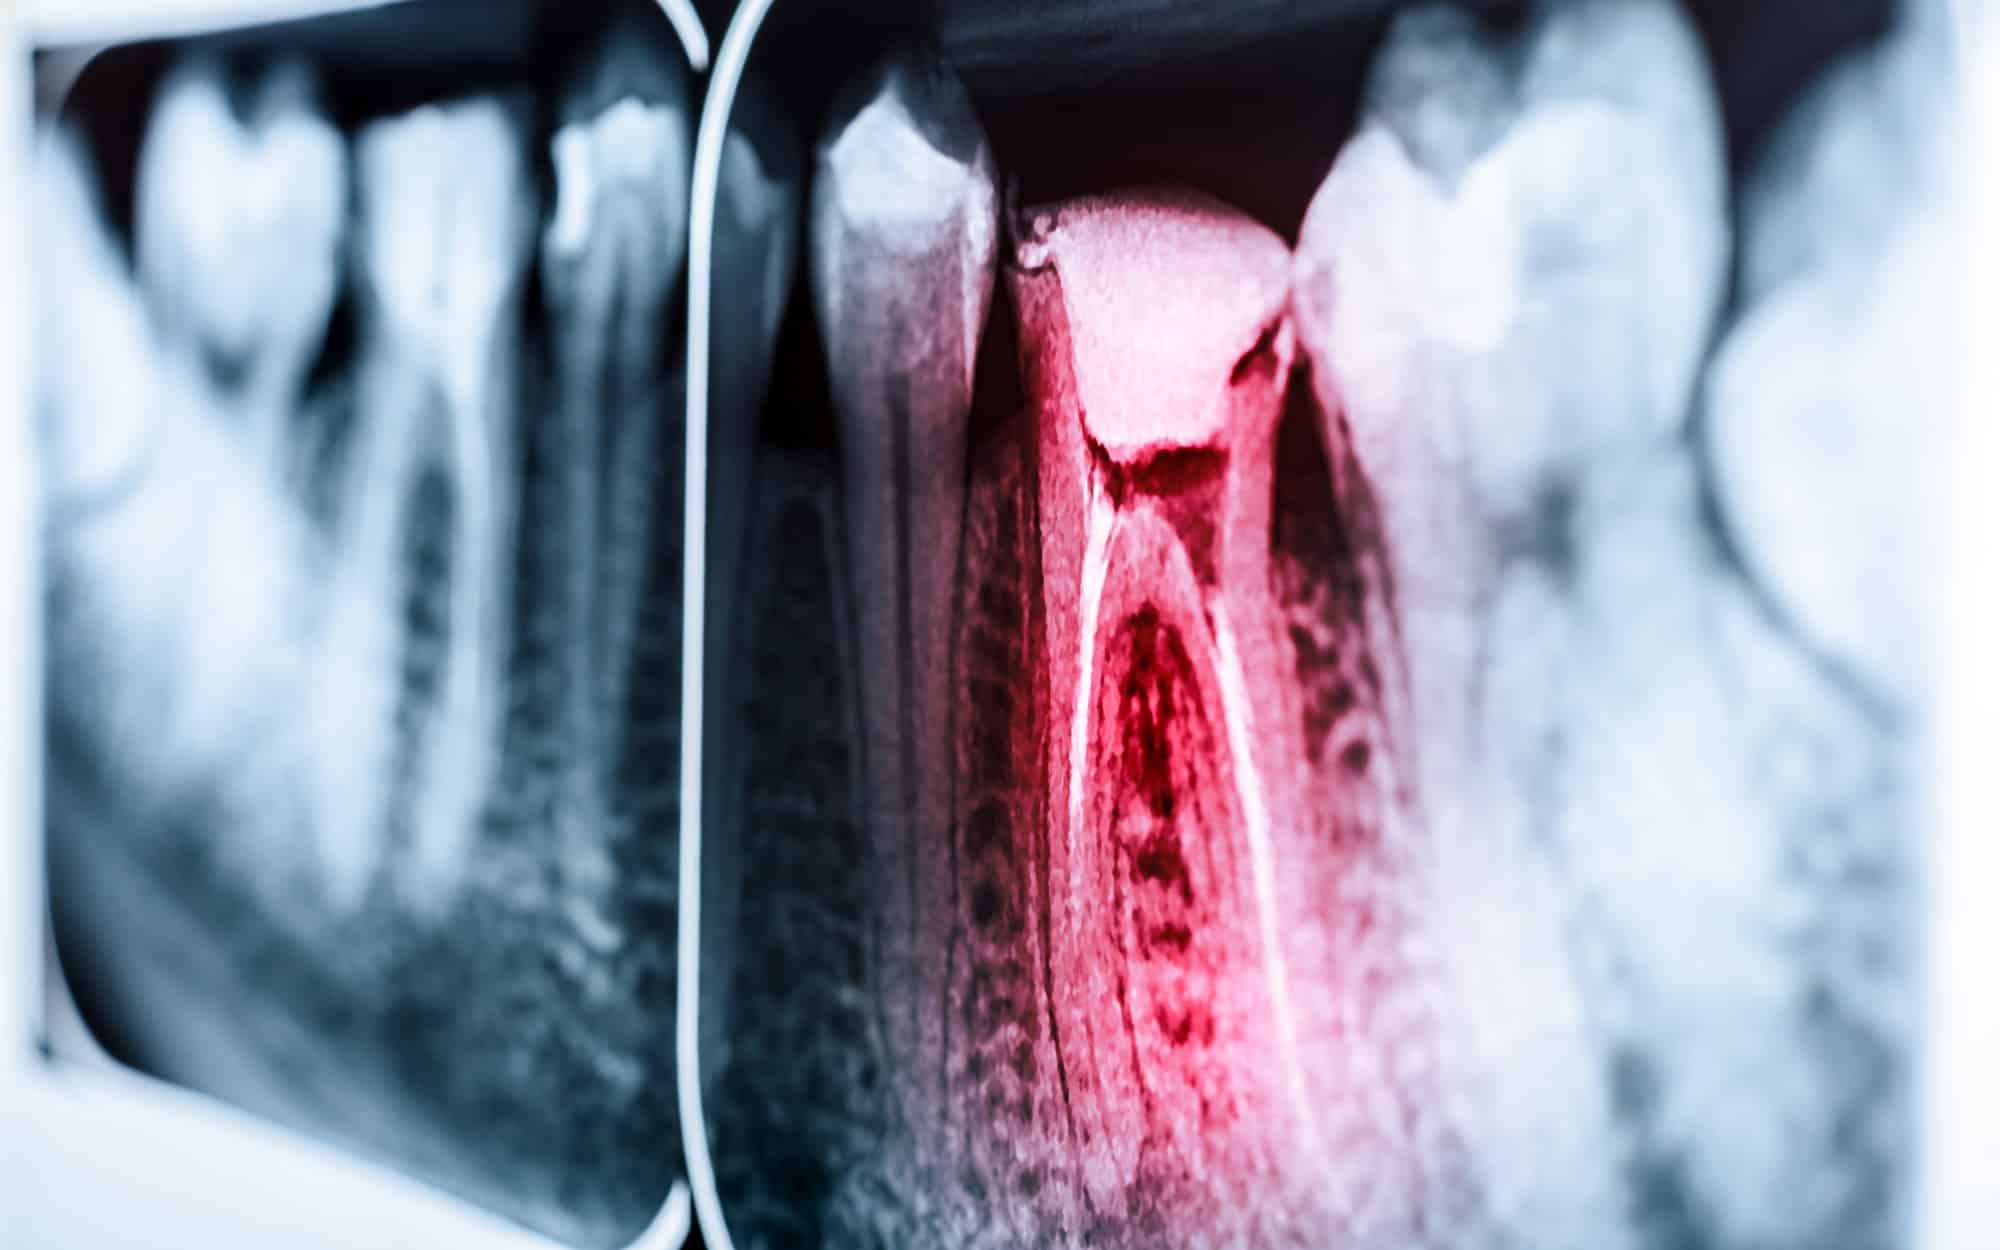 Wurzelbehandlung – Endodontie in Koblenz - Röntgenbild eines Zahnes mit Wurzelkanalentzündung